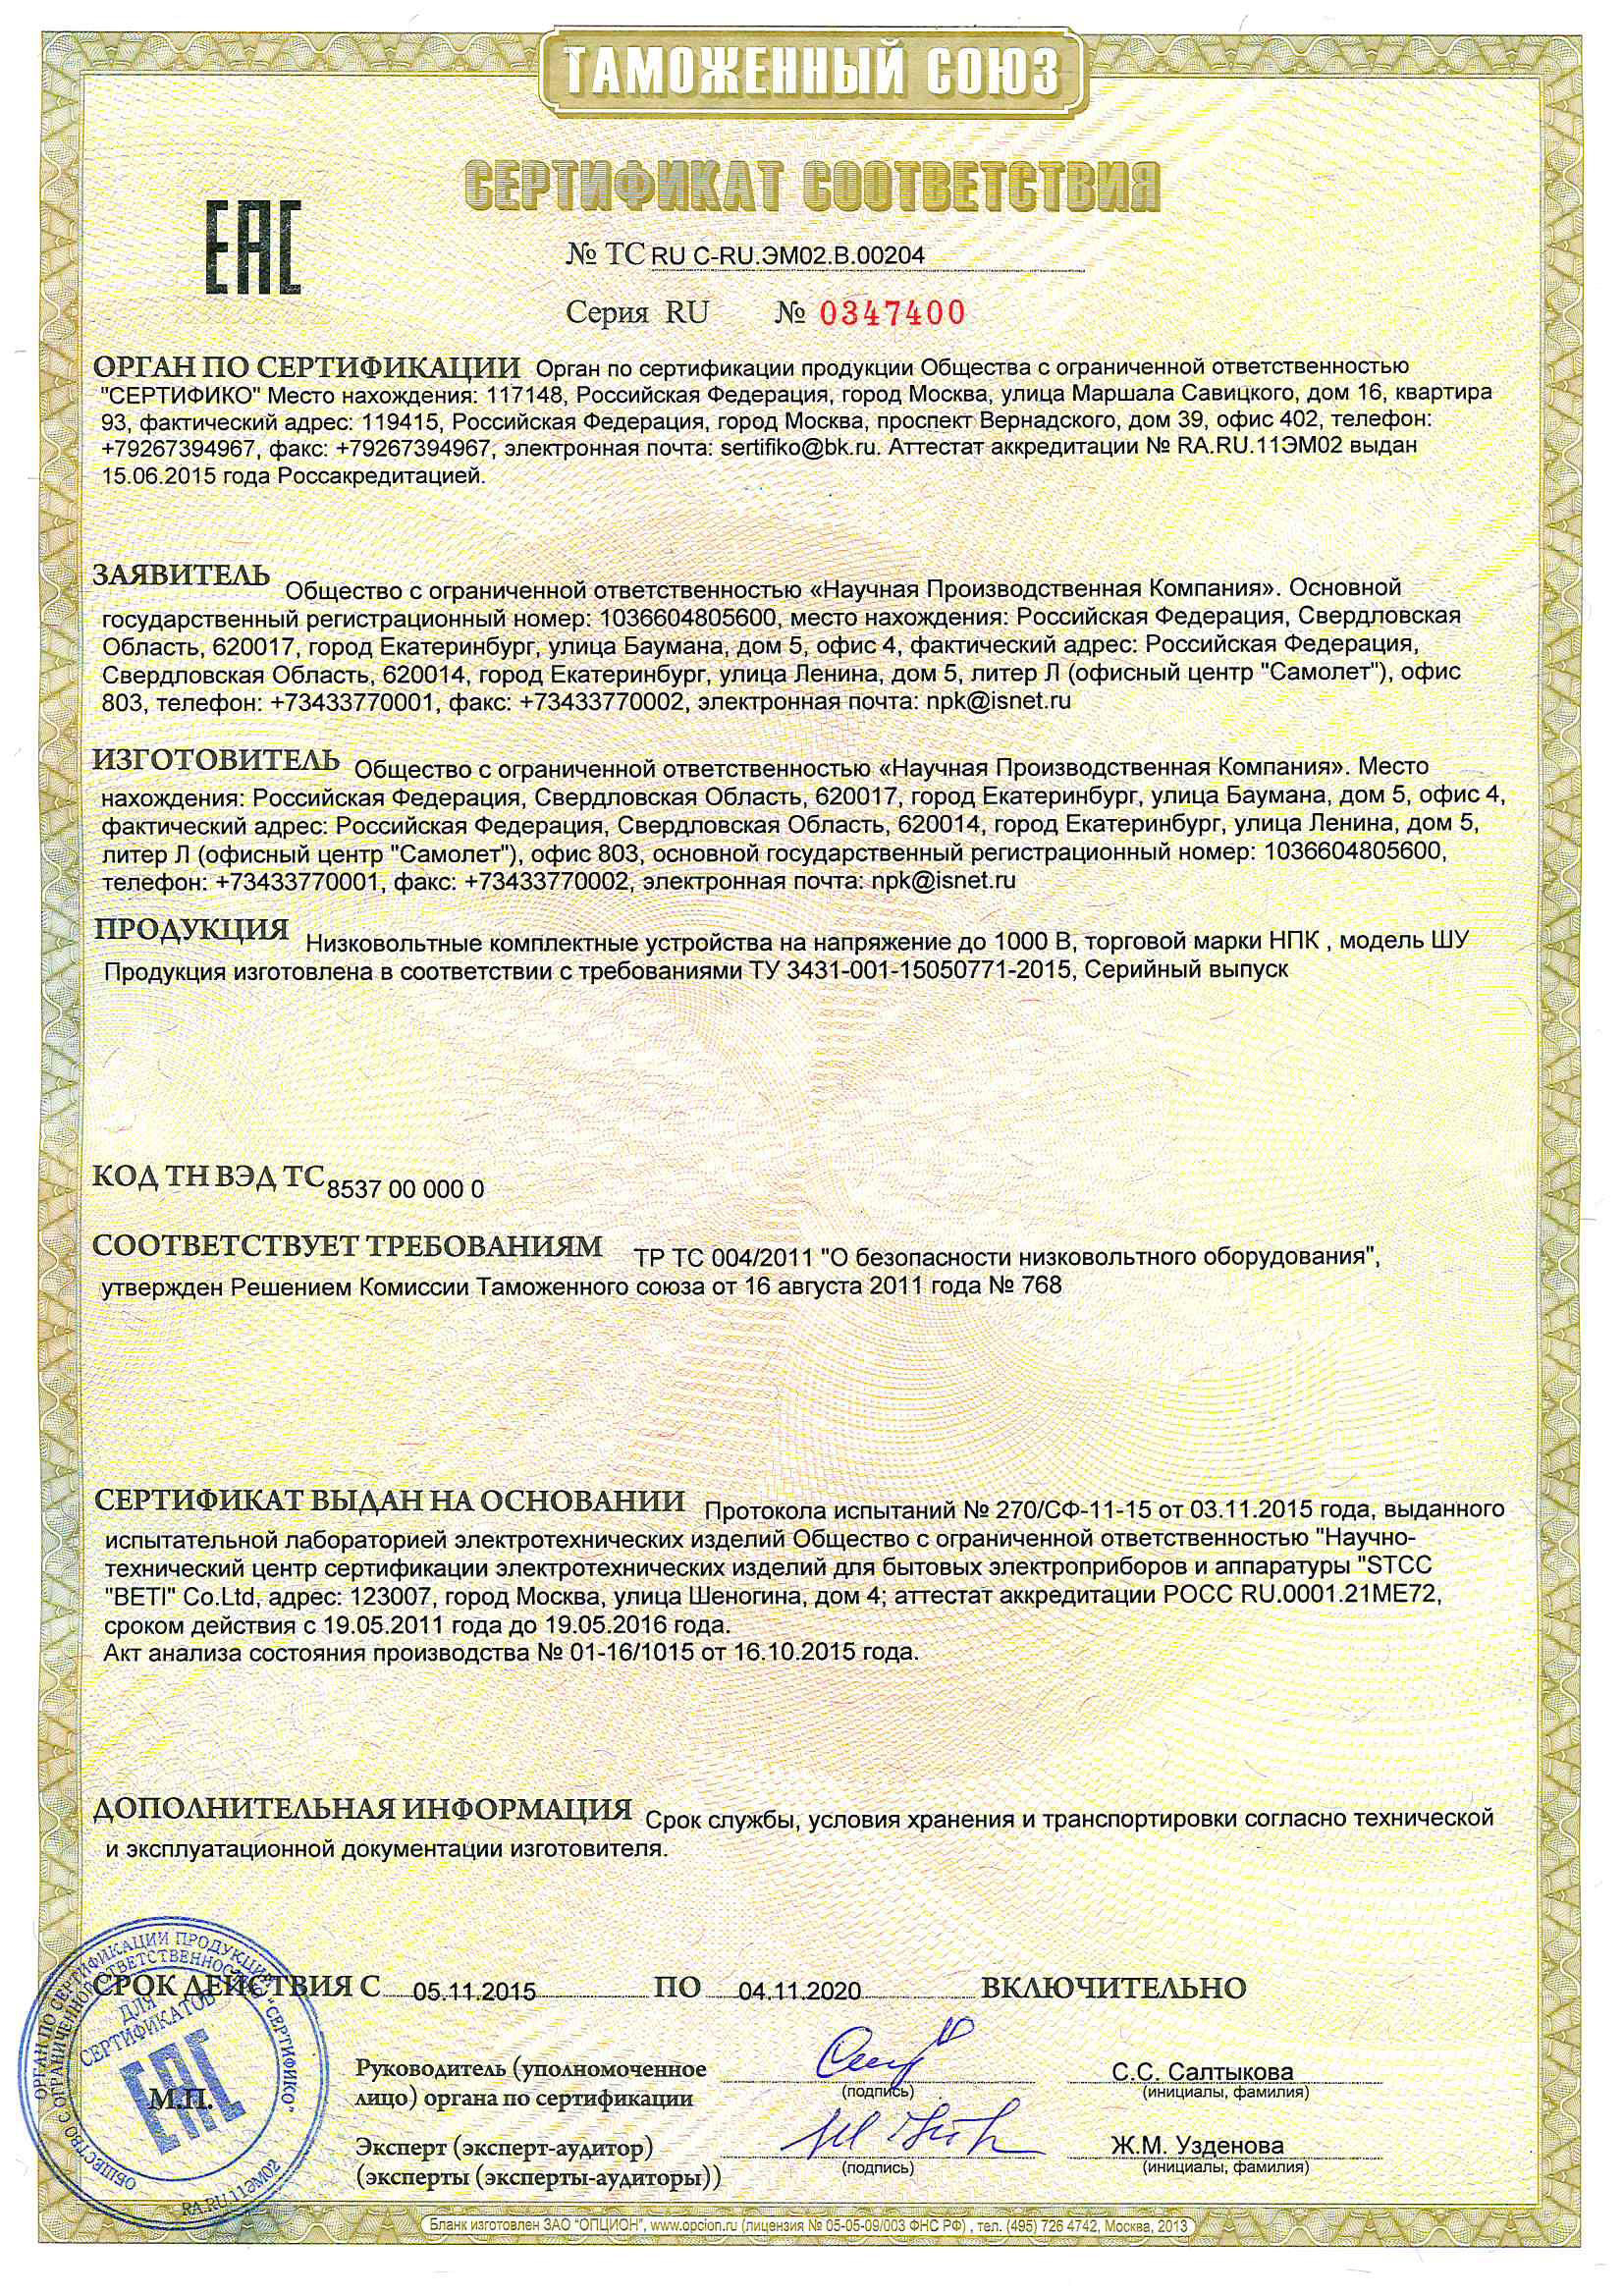 Сертификат соответствия требованиям Таможенного Союза.jpg